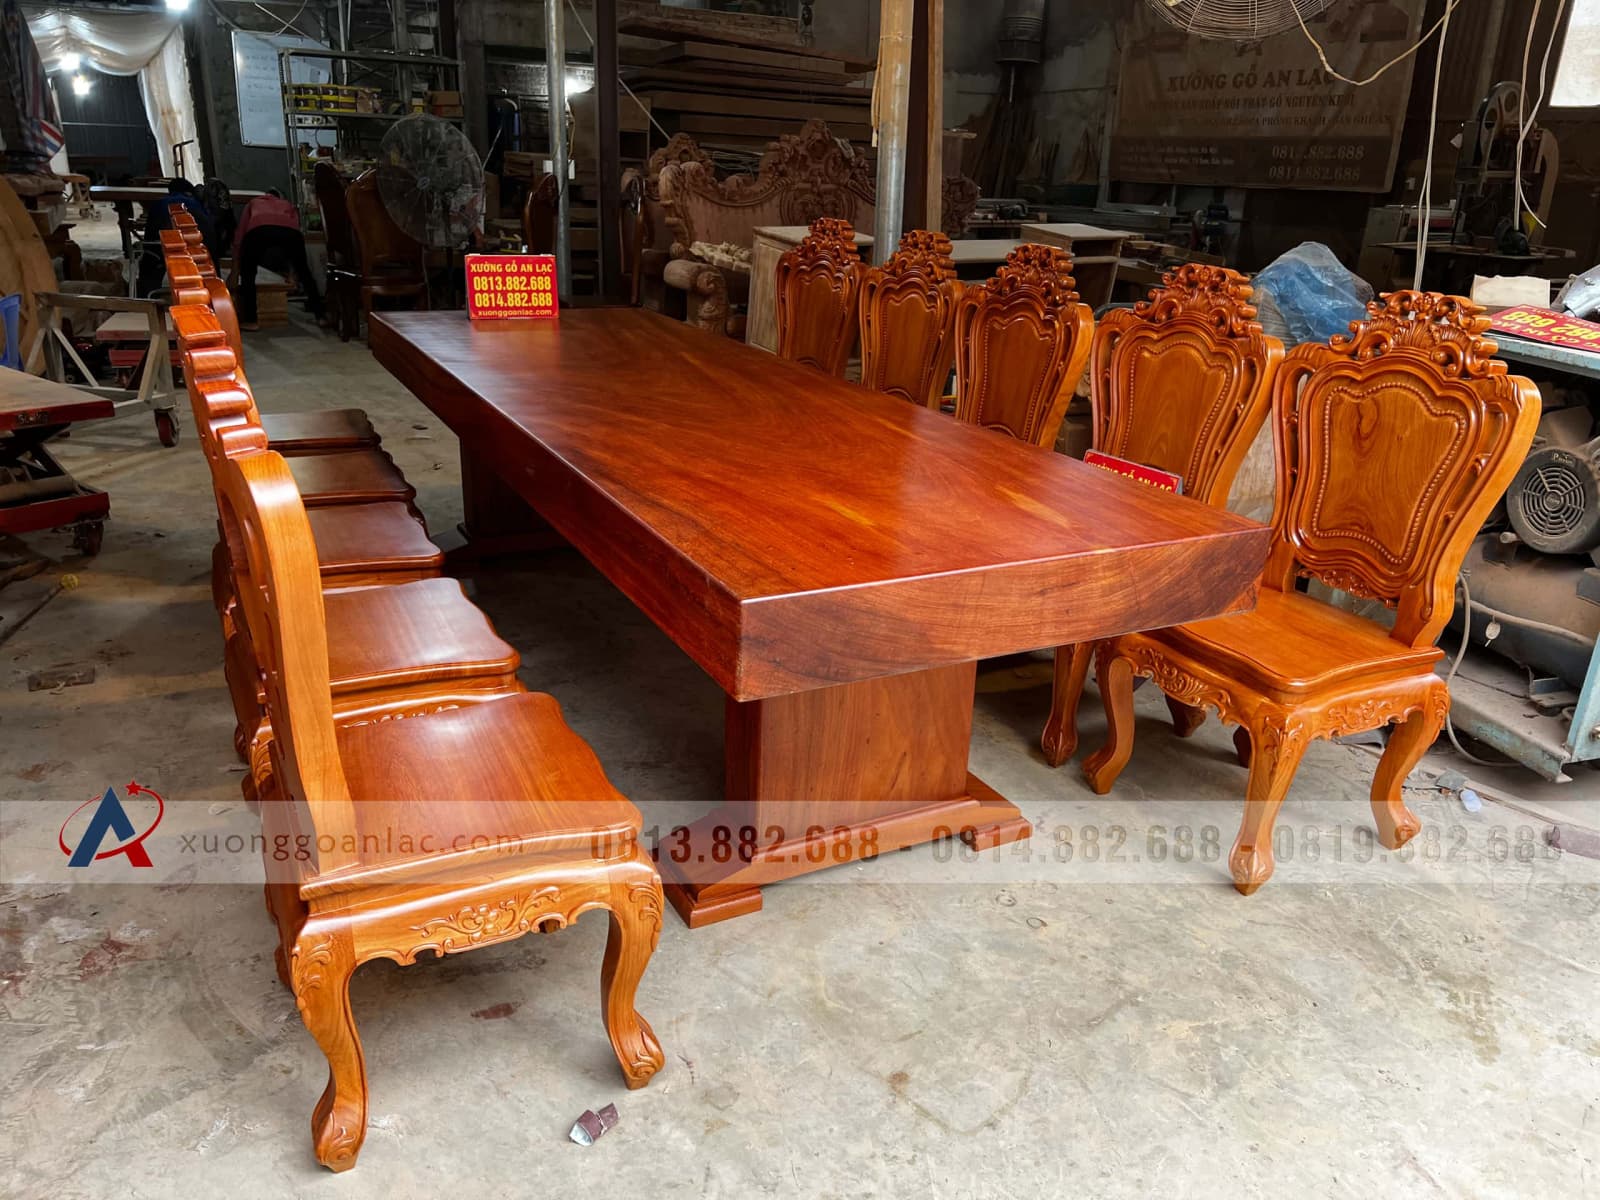 bộ bàn ăn 10 ghế louis bàn 300x98x15cm gỗ gõ đỏ